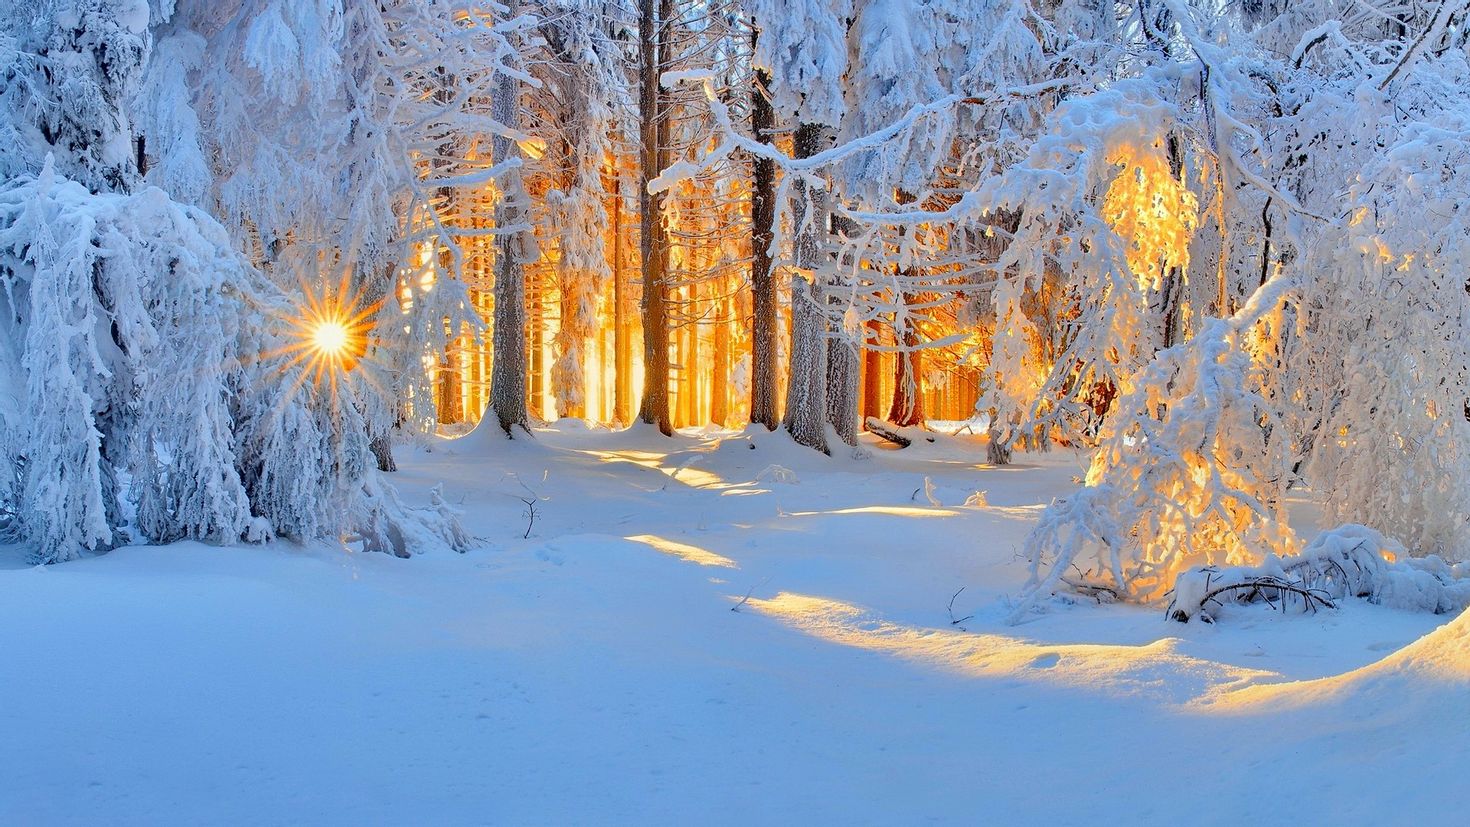 Фф и в морозном лесу навеки останусь. Зима снег. Сказочная зима. Зимний лес. Зимняя природа.